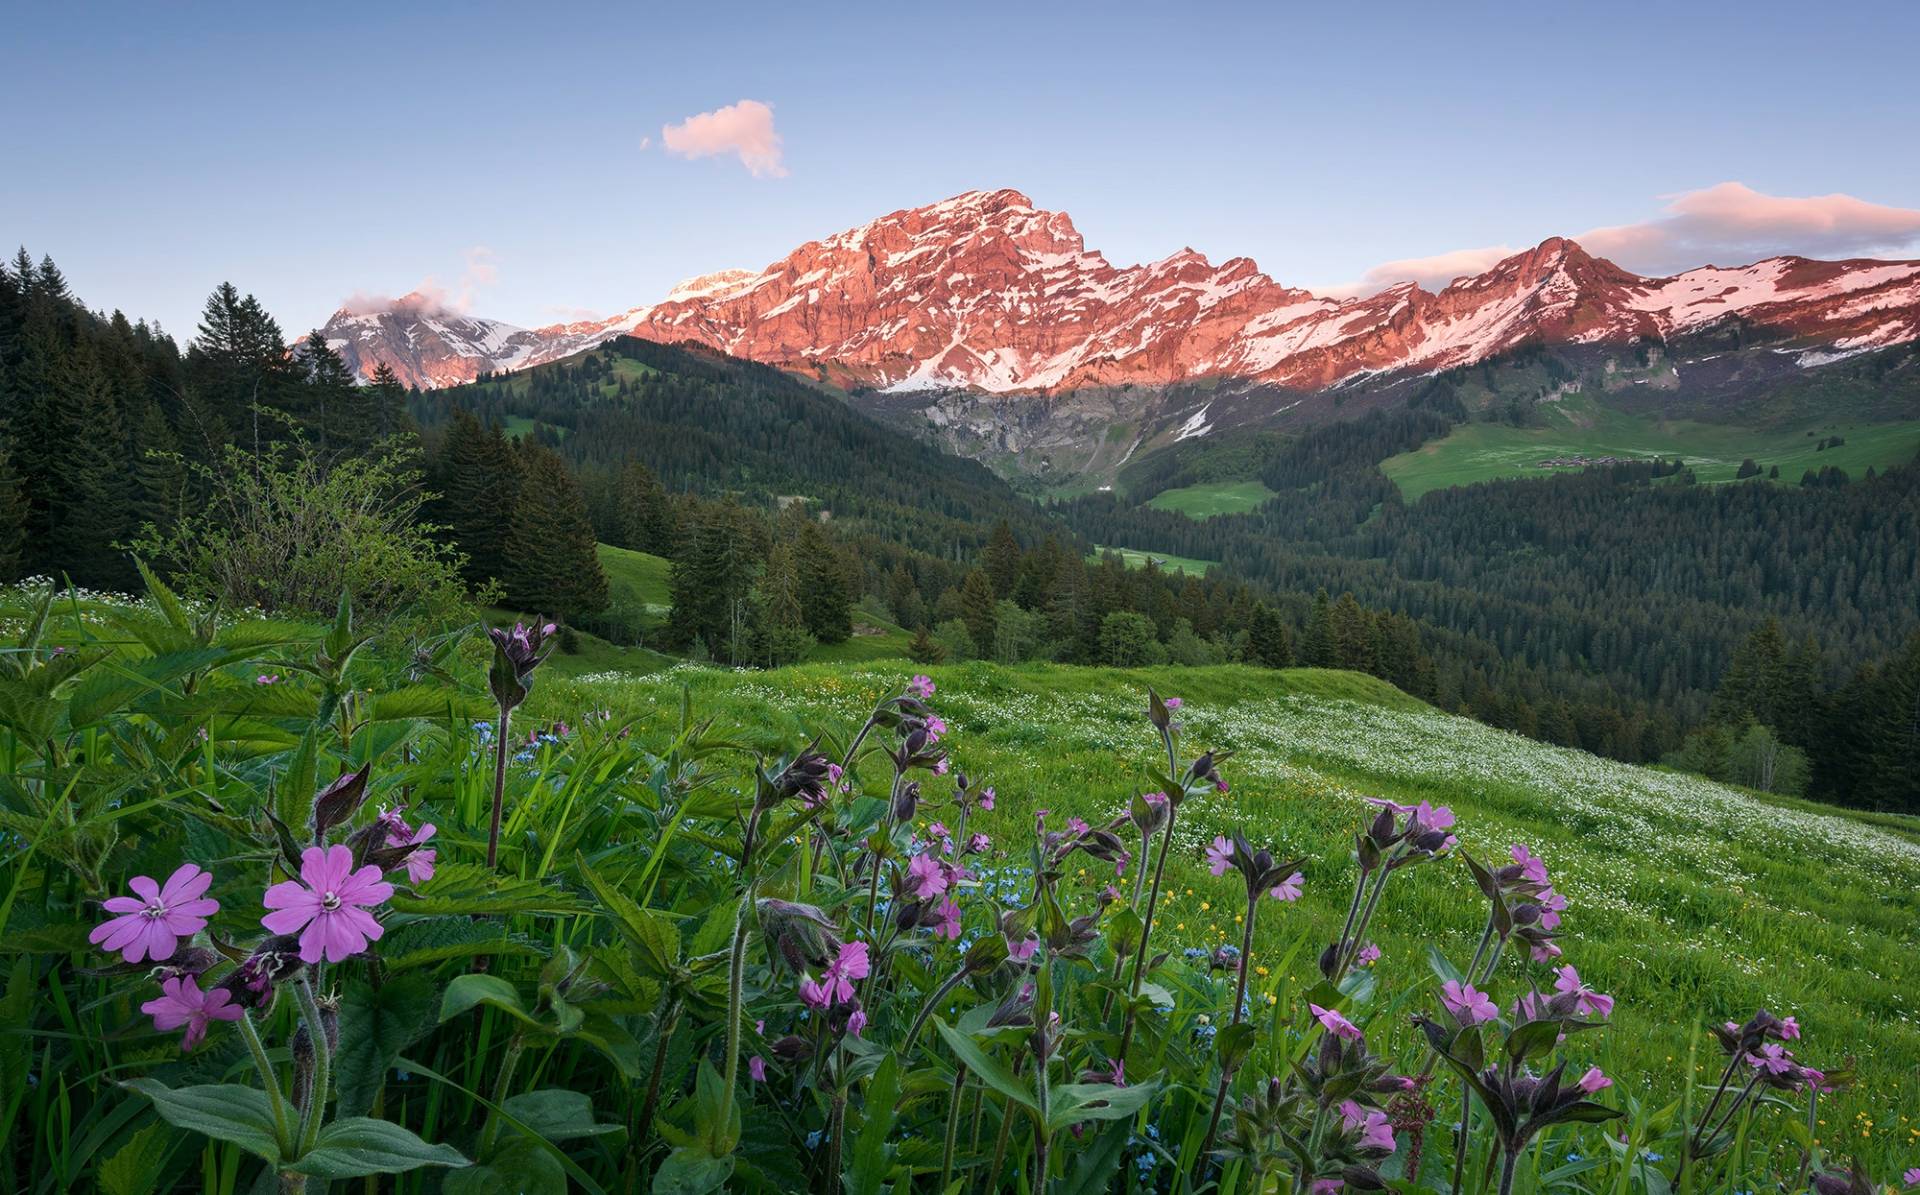 Komar Vliestapete "Picturesque Switzerland" von Komar